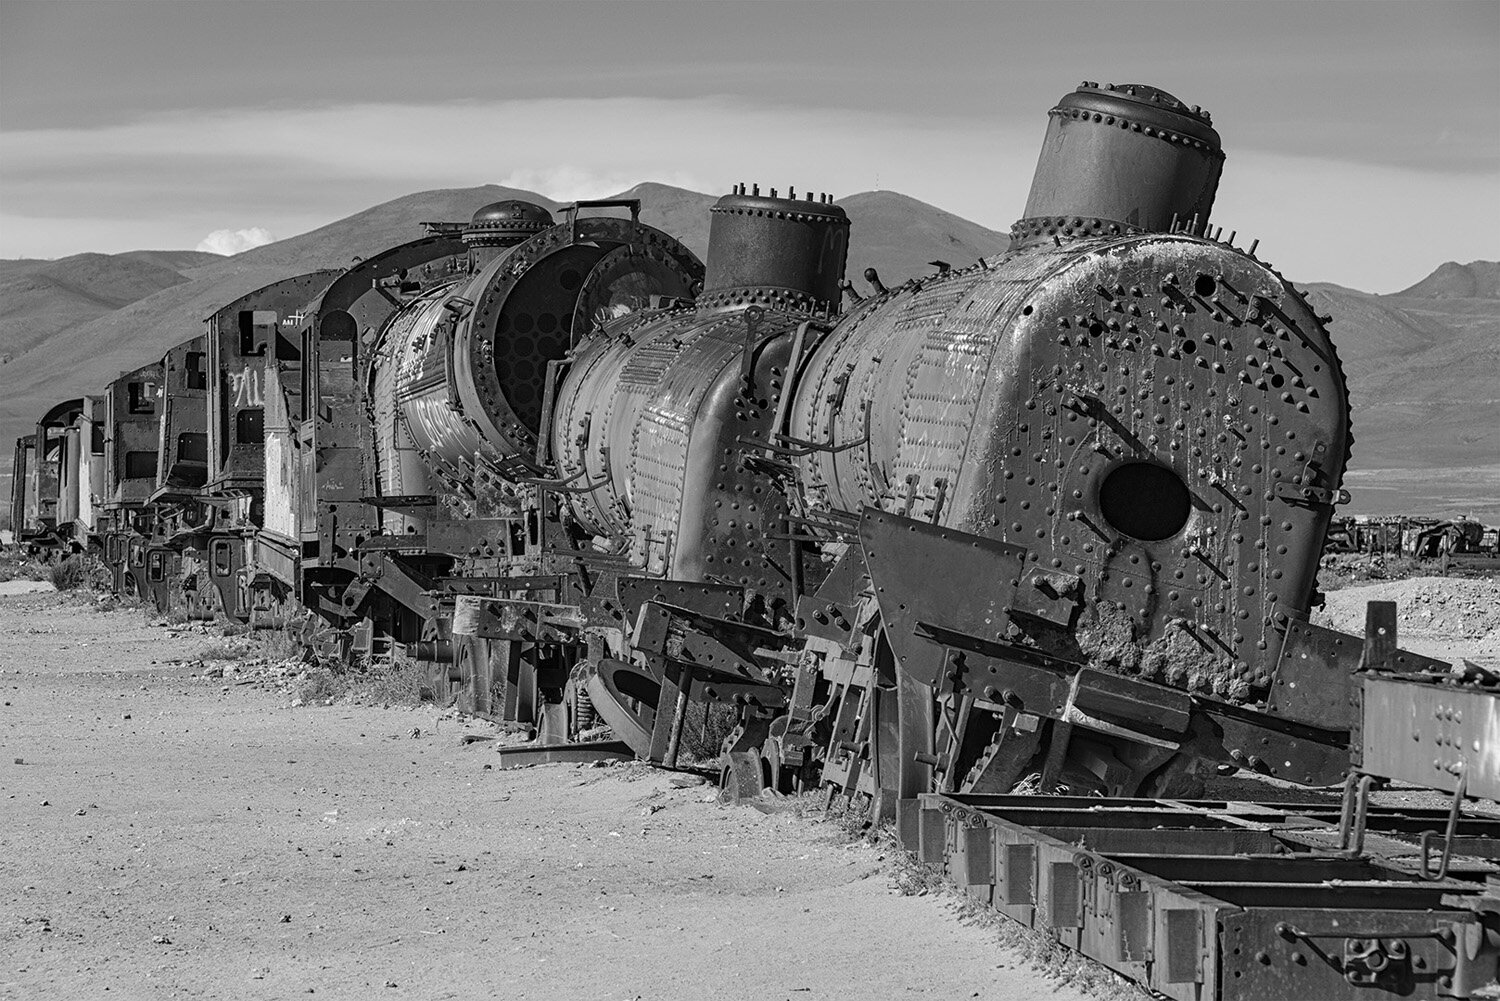 Train graveyard sm 03a.jpg